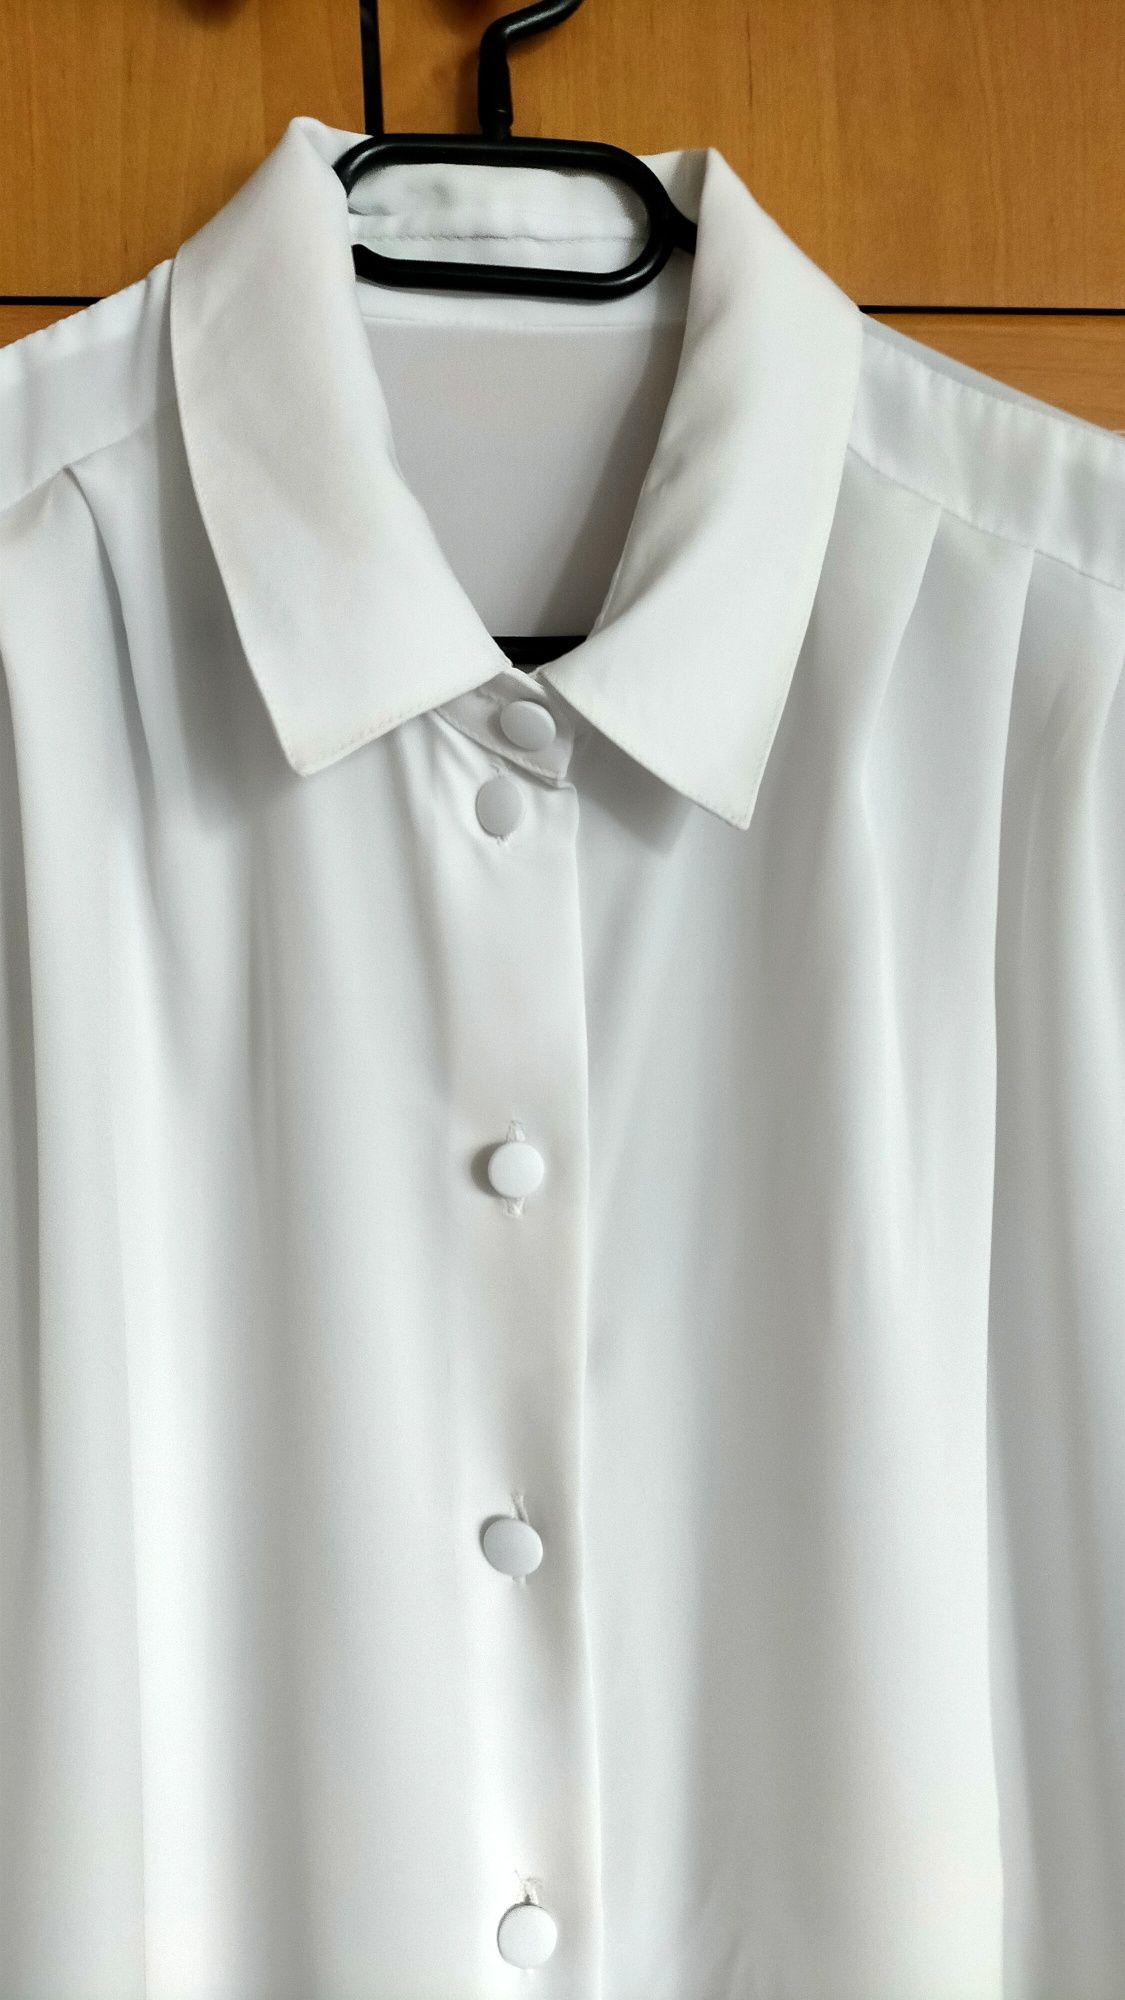 Duża wizytowa biała bluzka damska 52/54 klasyczna